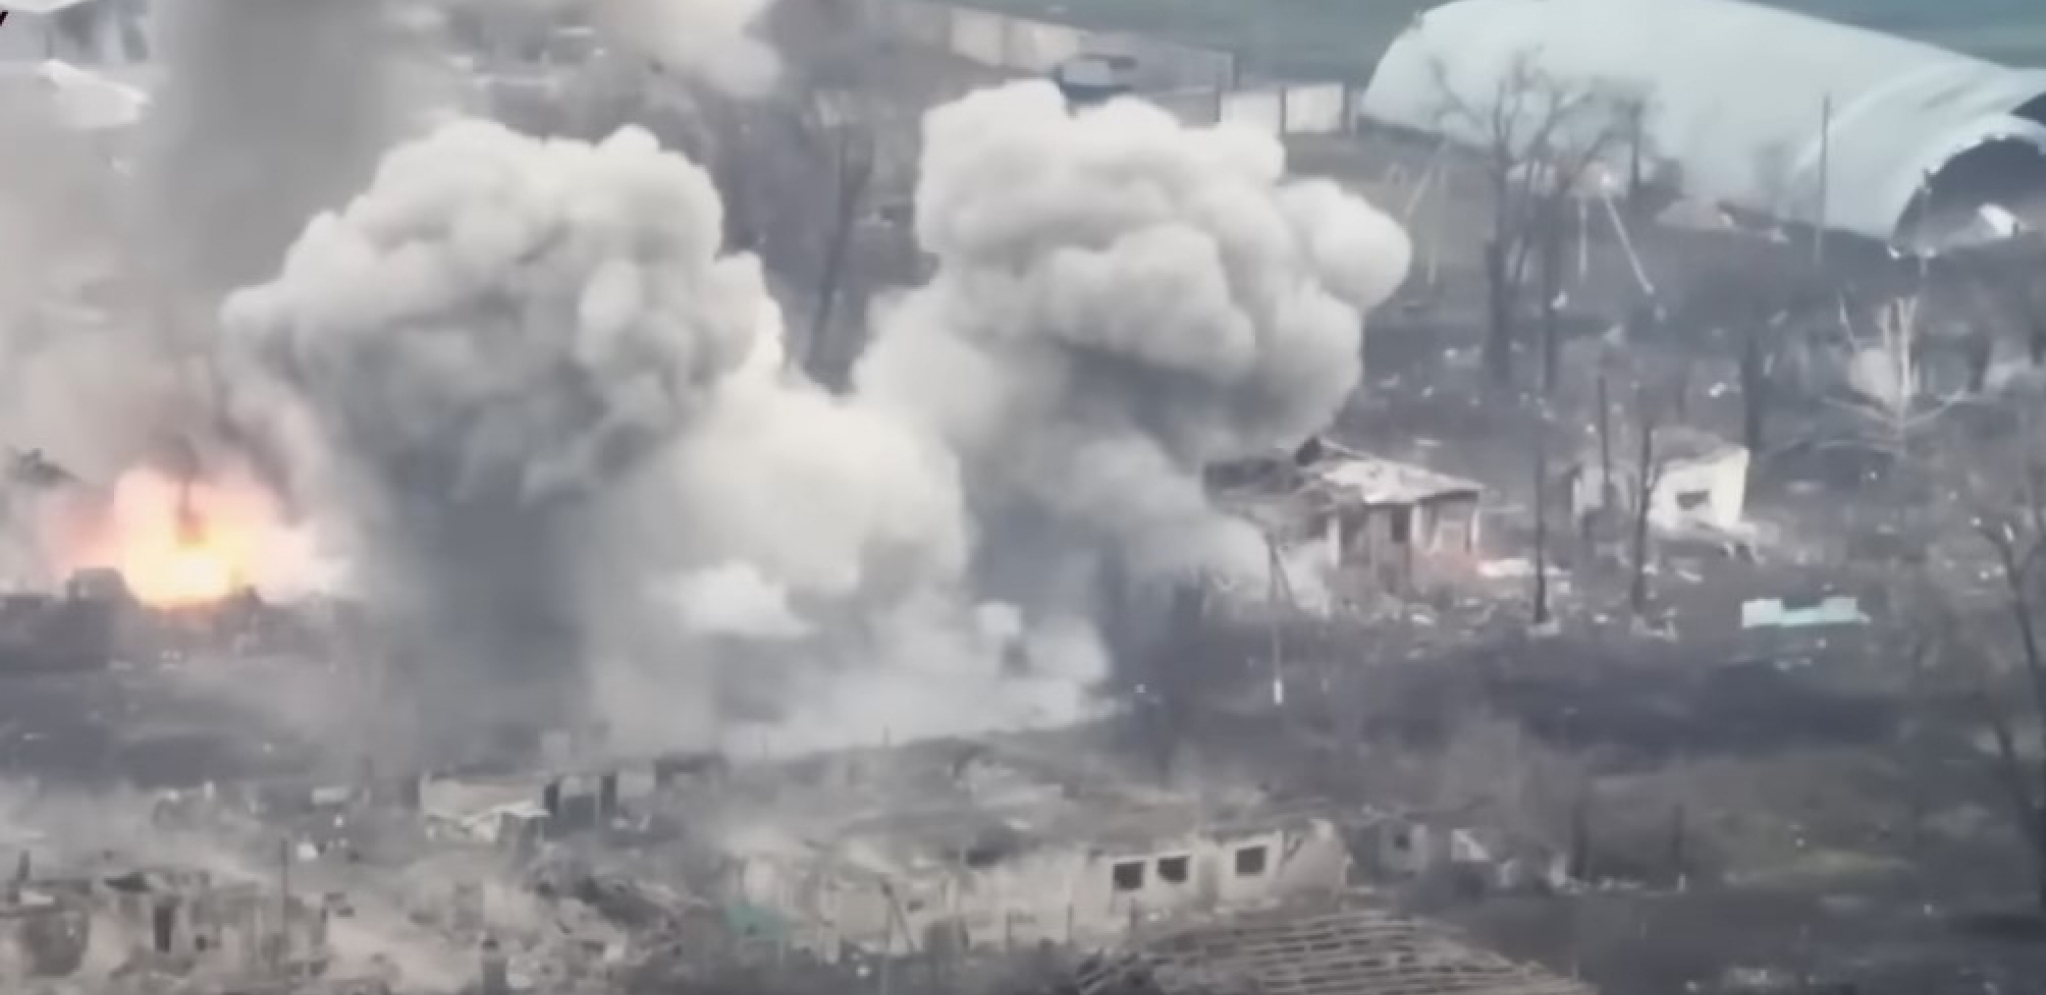 UKRAJINSKA BAZA ODLETELA U VAZDUH Ruske snage razorile uporište Ukrajinaca u žestokom napadu (VIDEO)